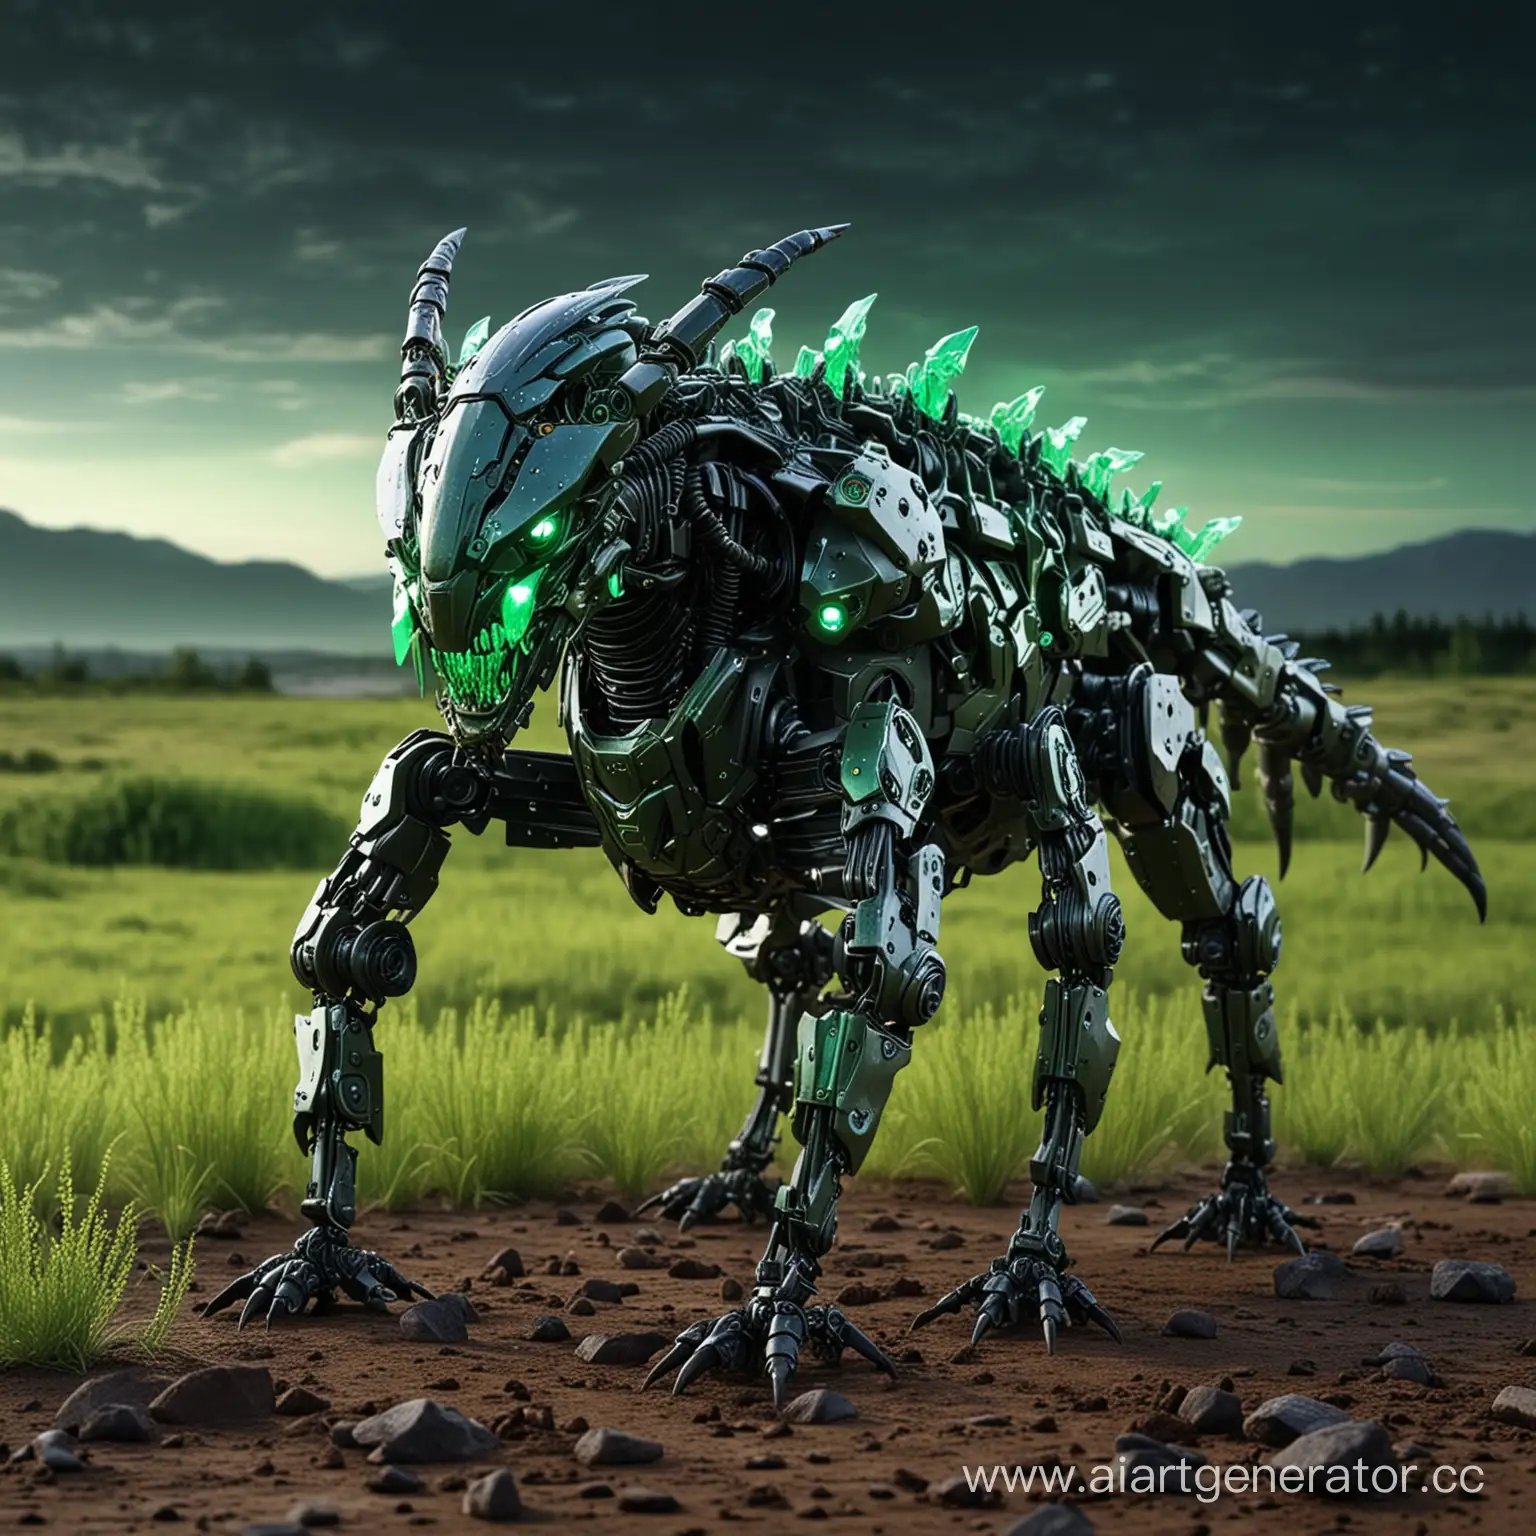 Робот волк скорпион на поле с зелёными светящимися кристаллами